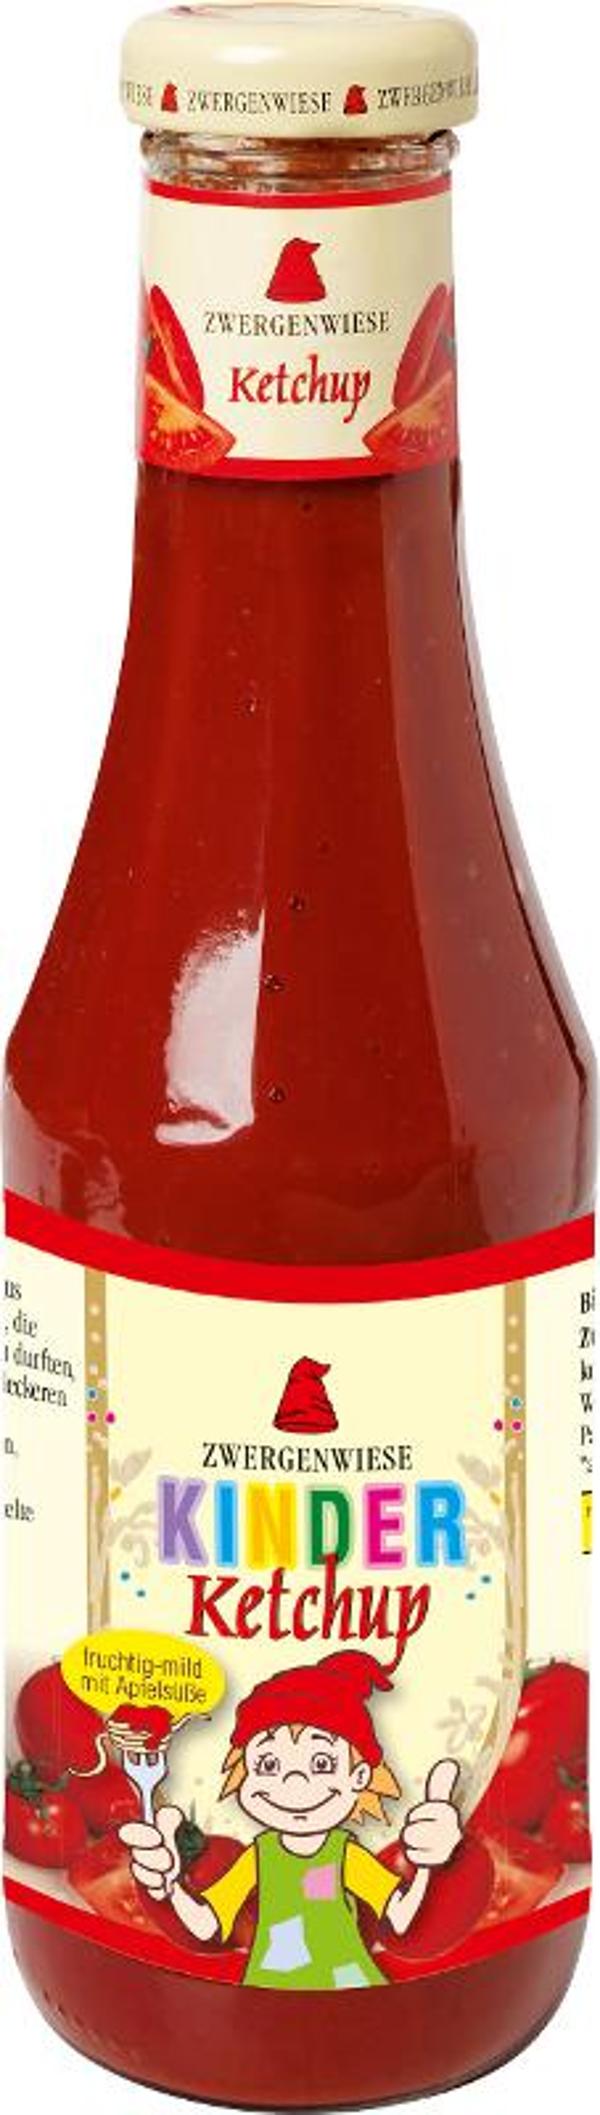 Produktfoto zu Zwergenwiese Kinder Ketchup mit Apfelsüße - 500ml